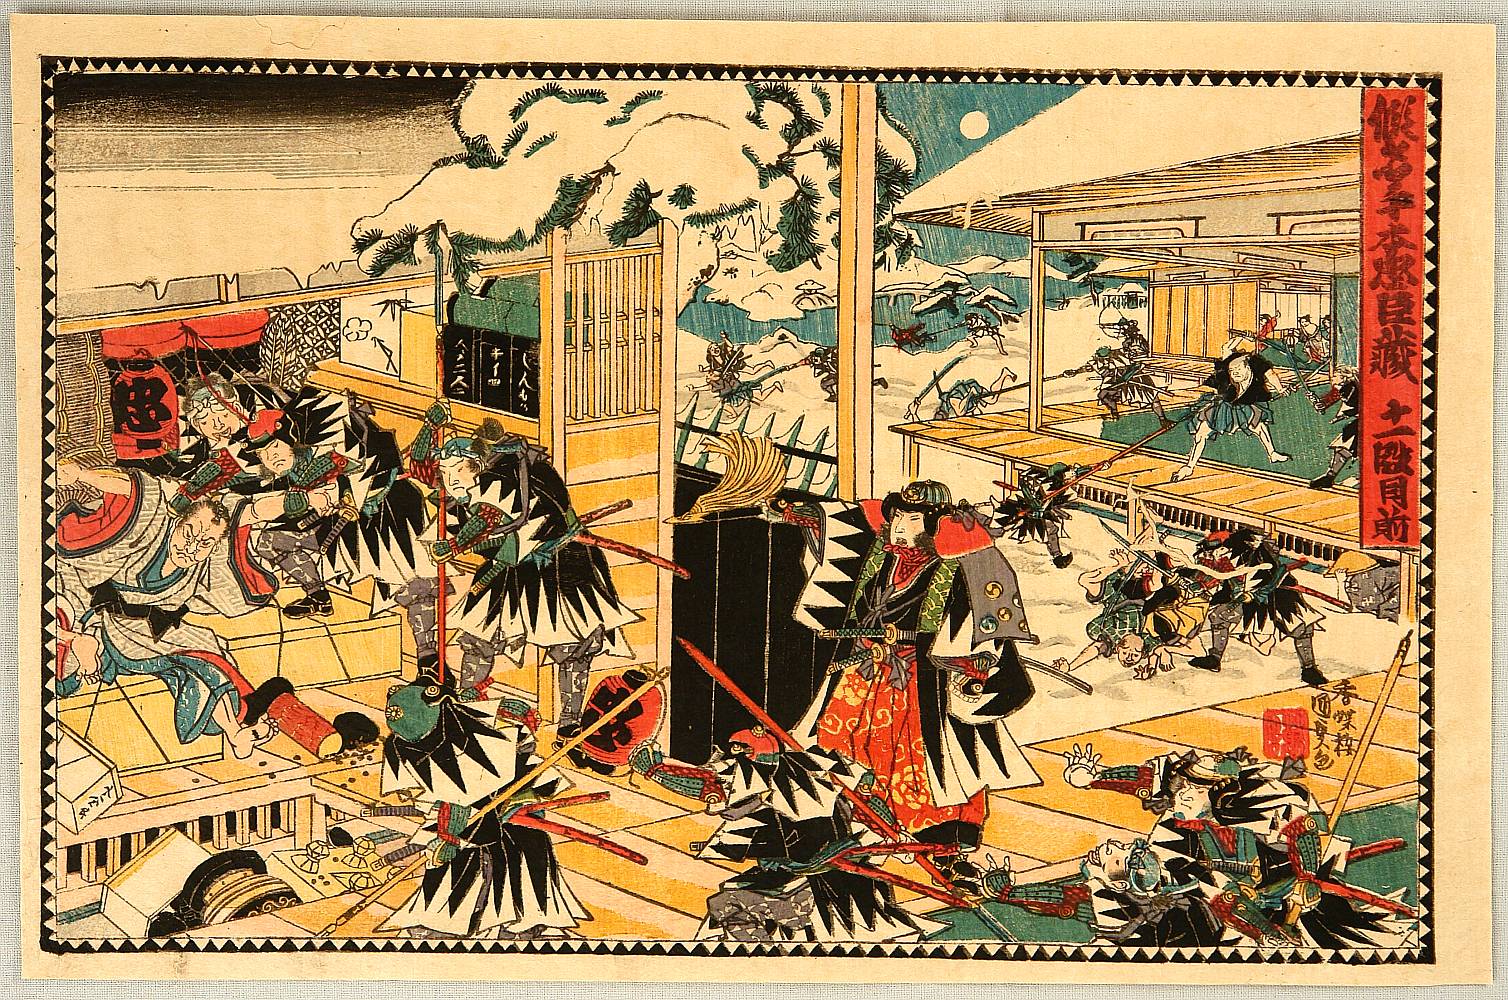 Utagawa Kunisada: 47 Ronin - Kanadehon Chushingura Act.11 